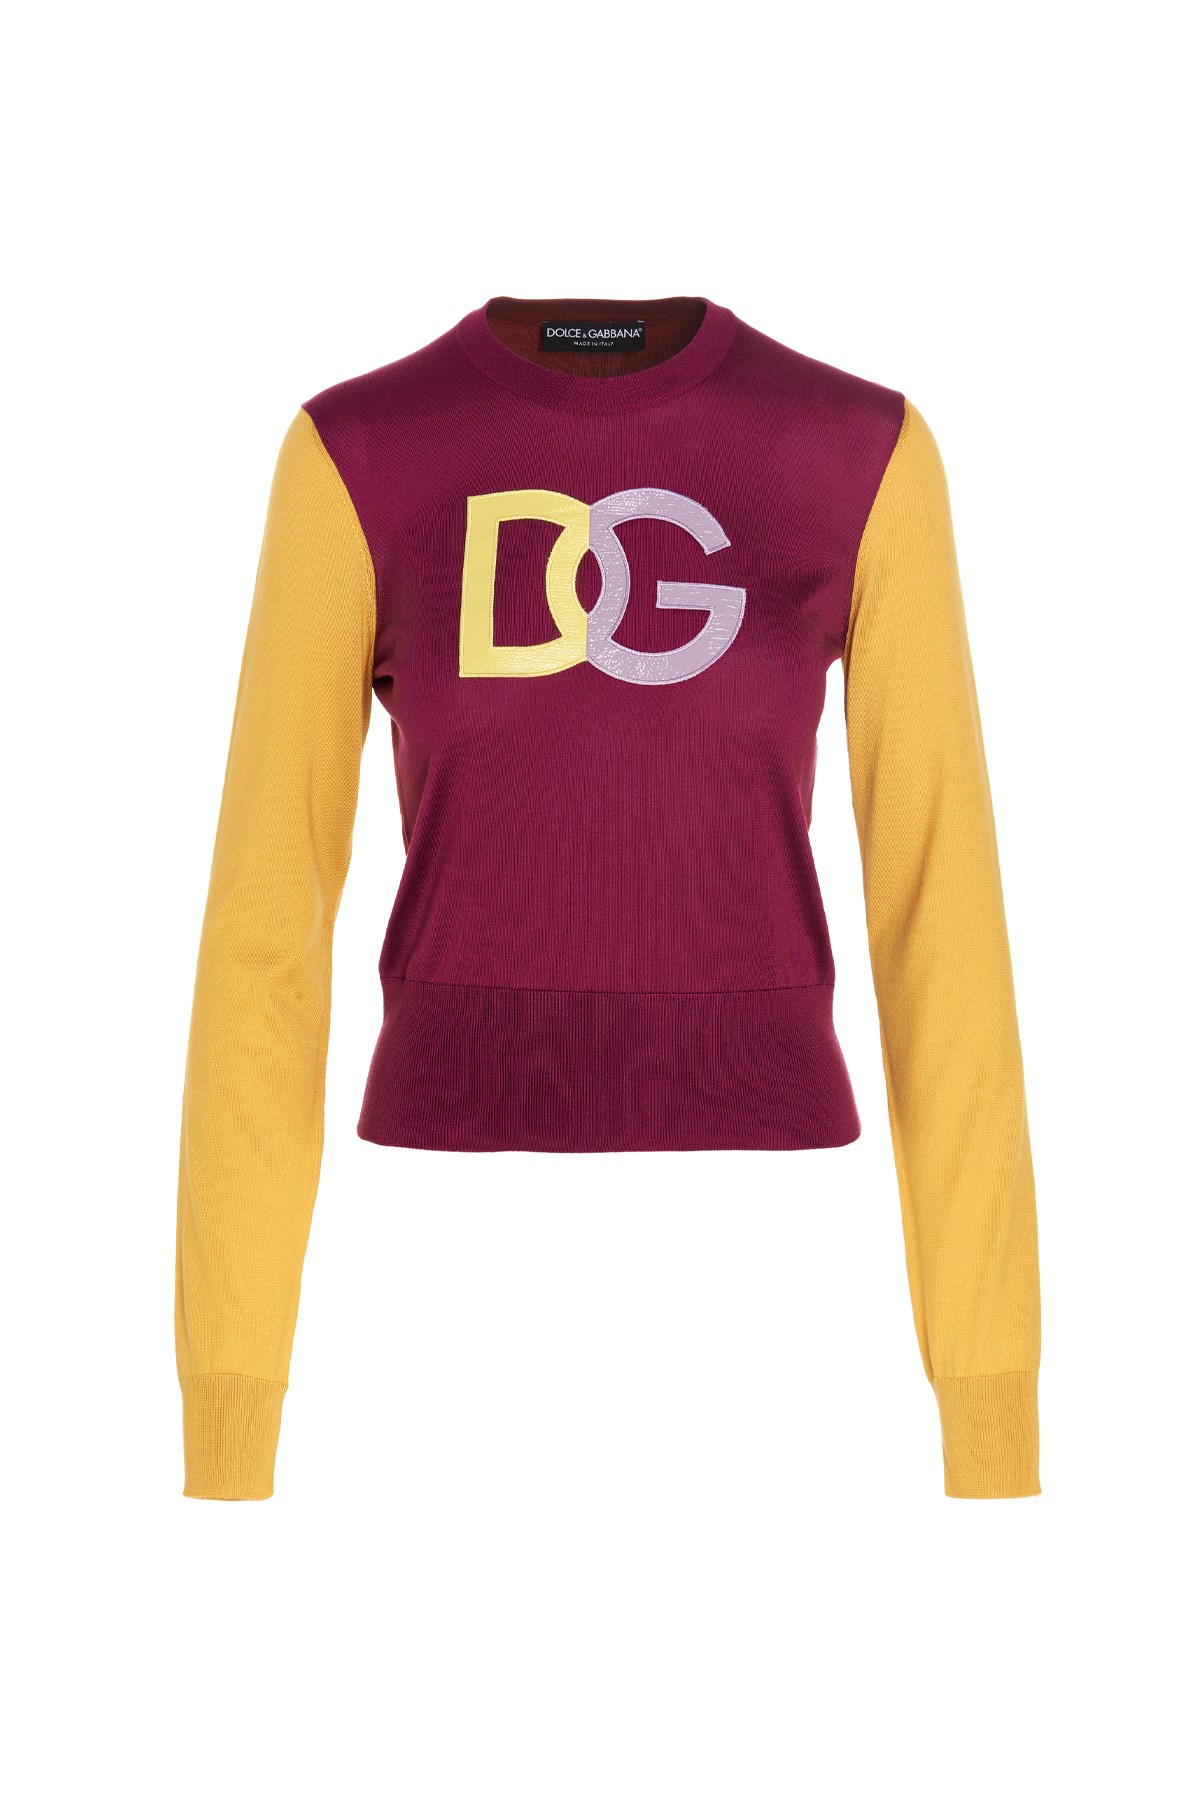 DOLCE & GABBANA Pullover 'Dg' Mit Logo